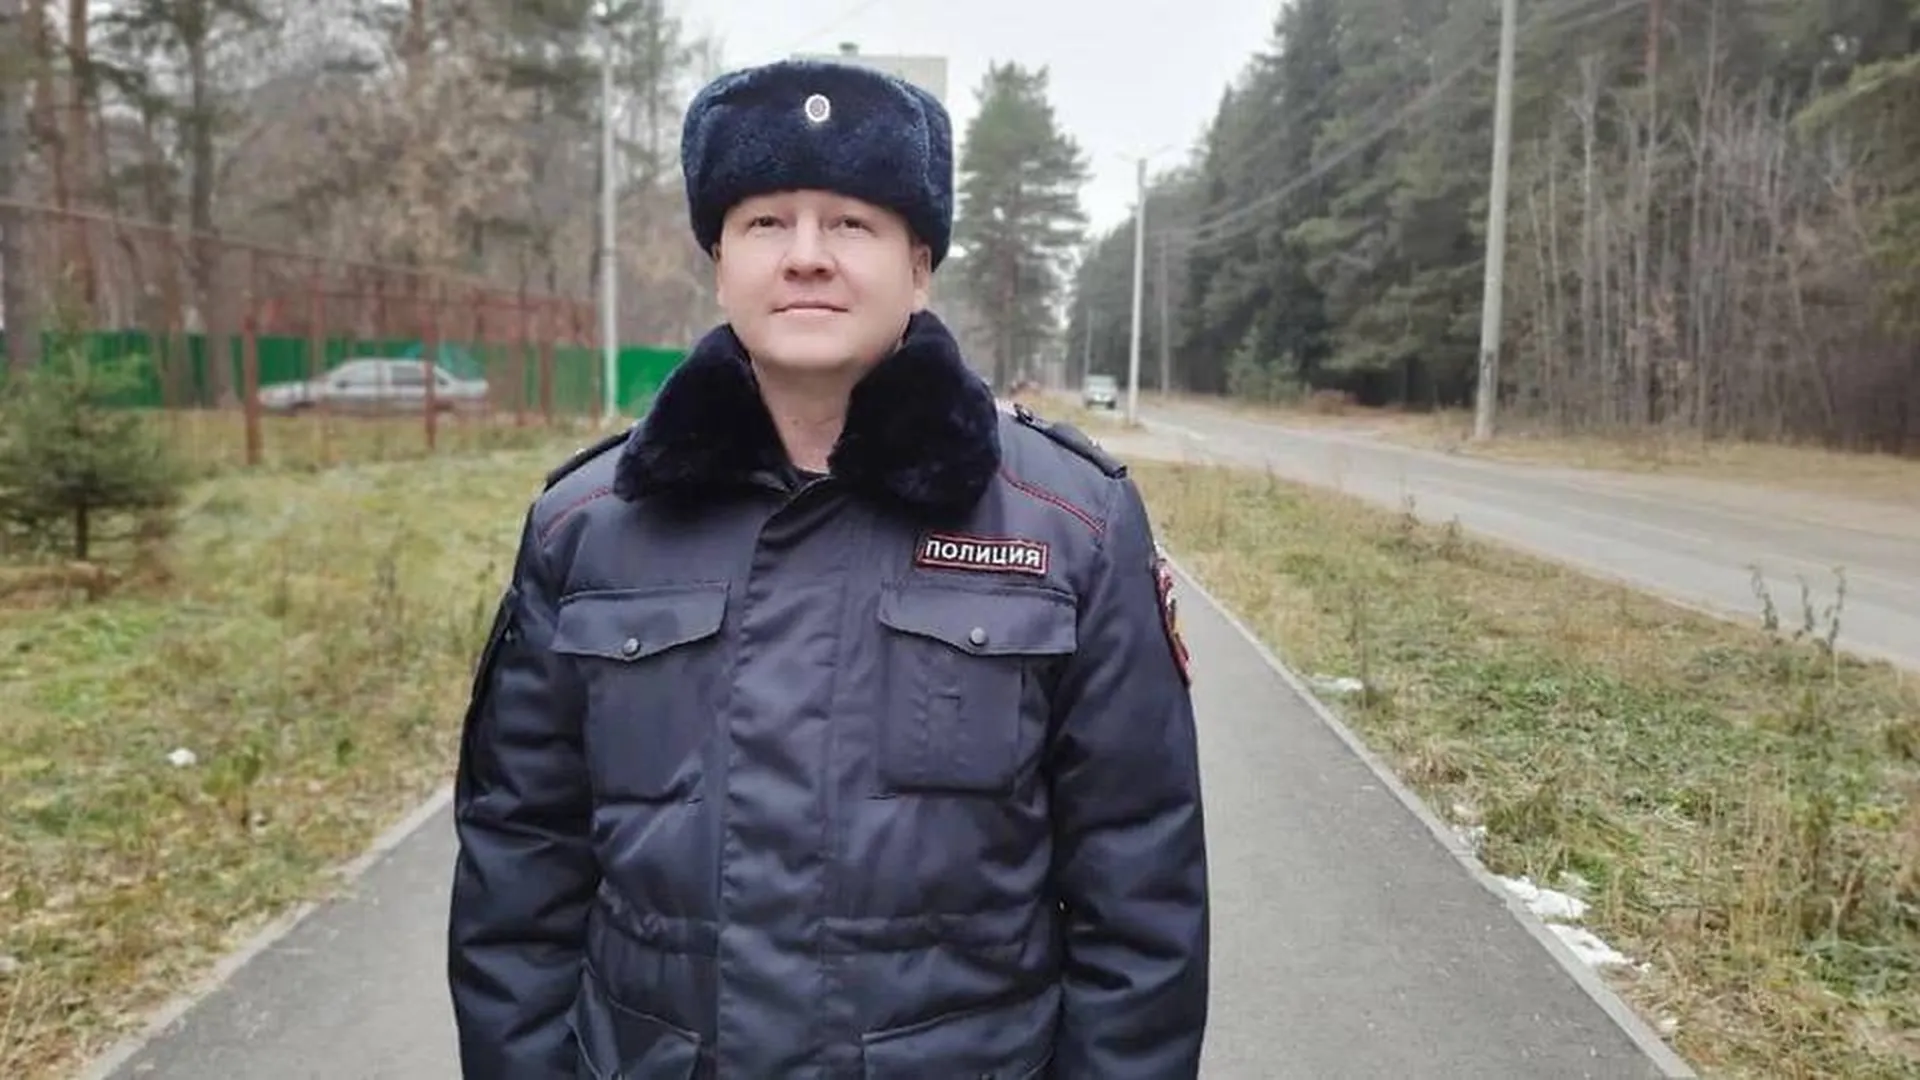 Полицейский в Пермском крае остановил на ходу фуру, водитель которой умер от инфаркта